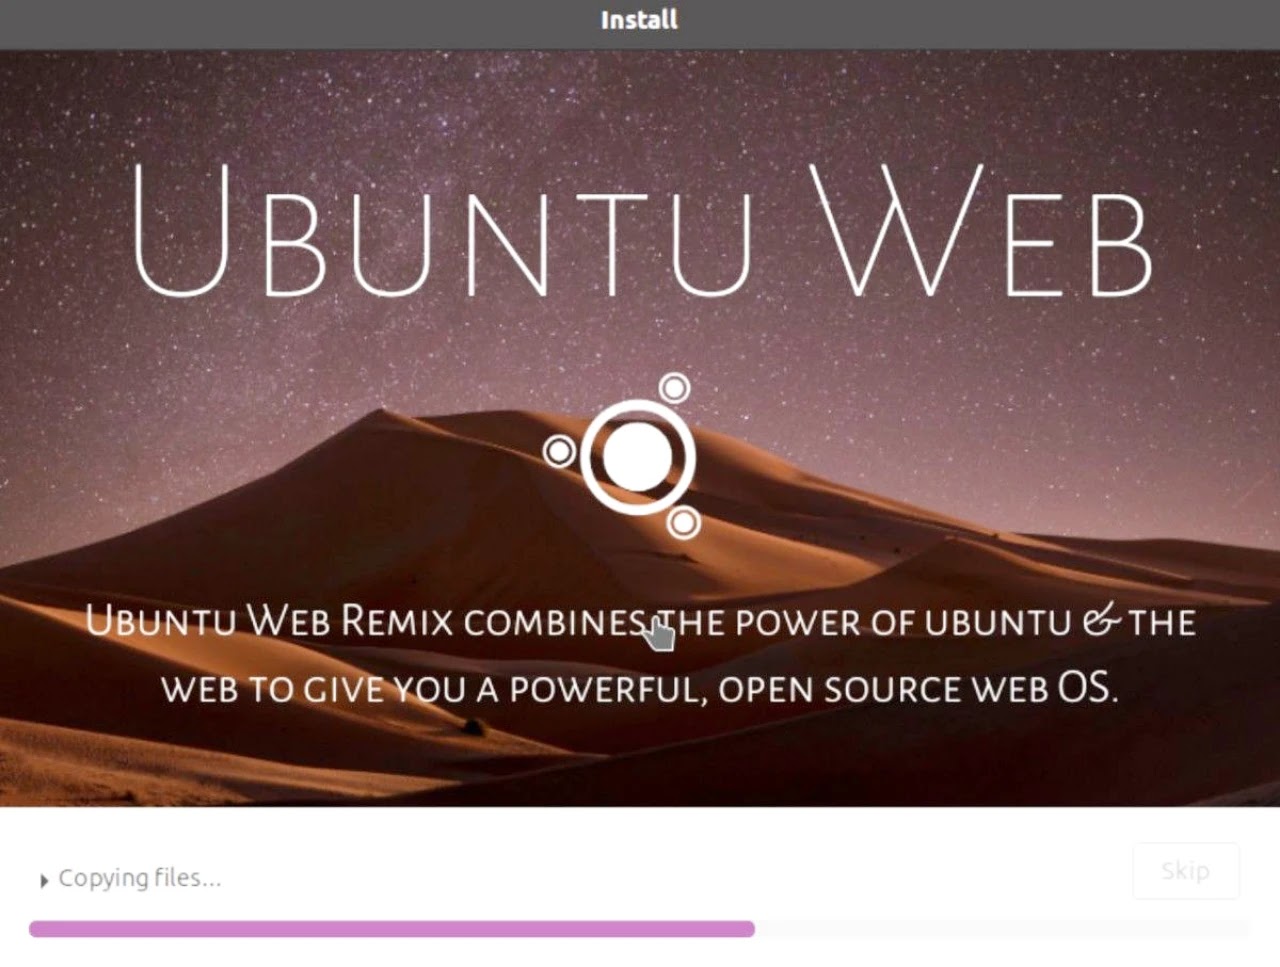 Ubuntu Web download page